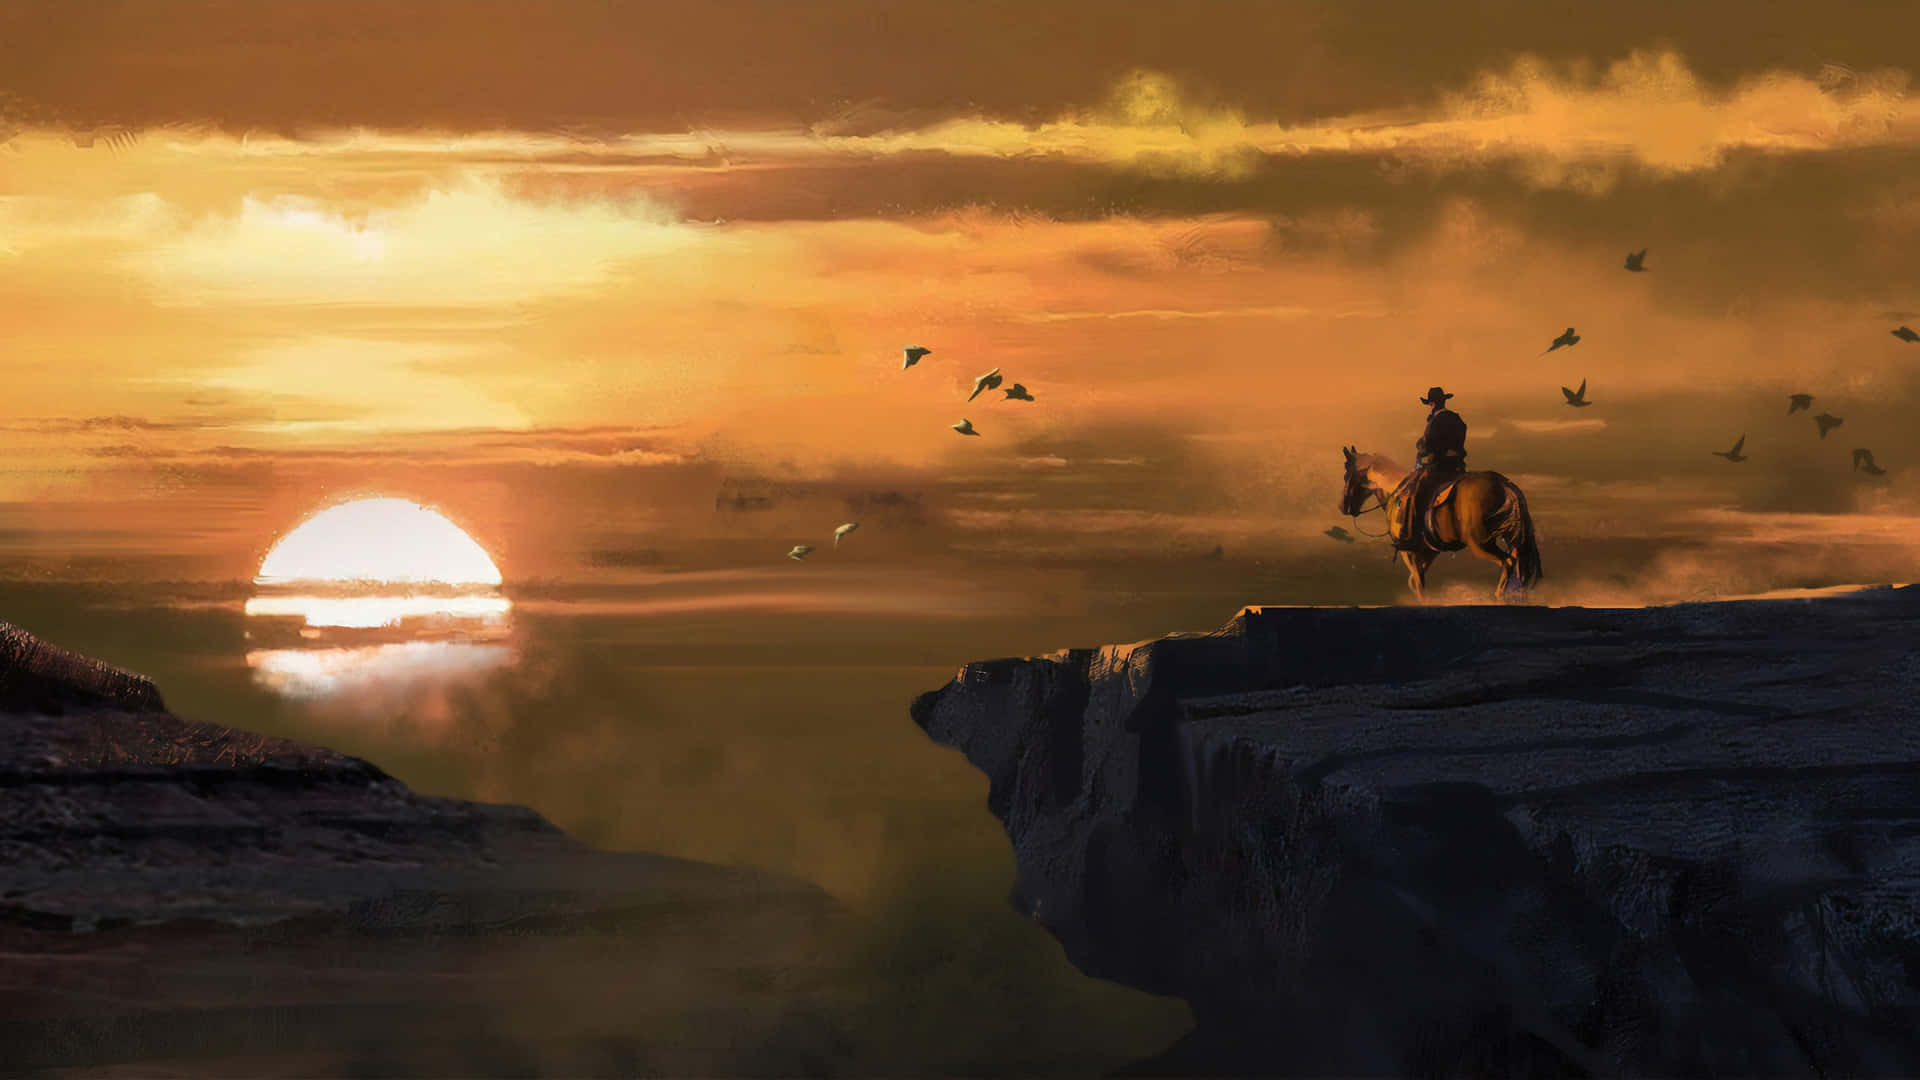 Migliorsfondo Di Red Dead Redemption 2: Il Cowboy Che Guarda Il Tramonto.